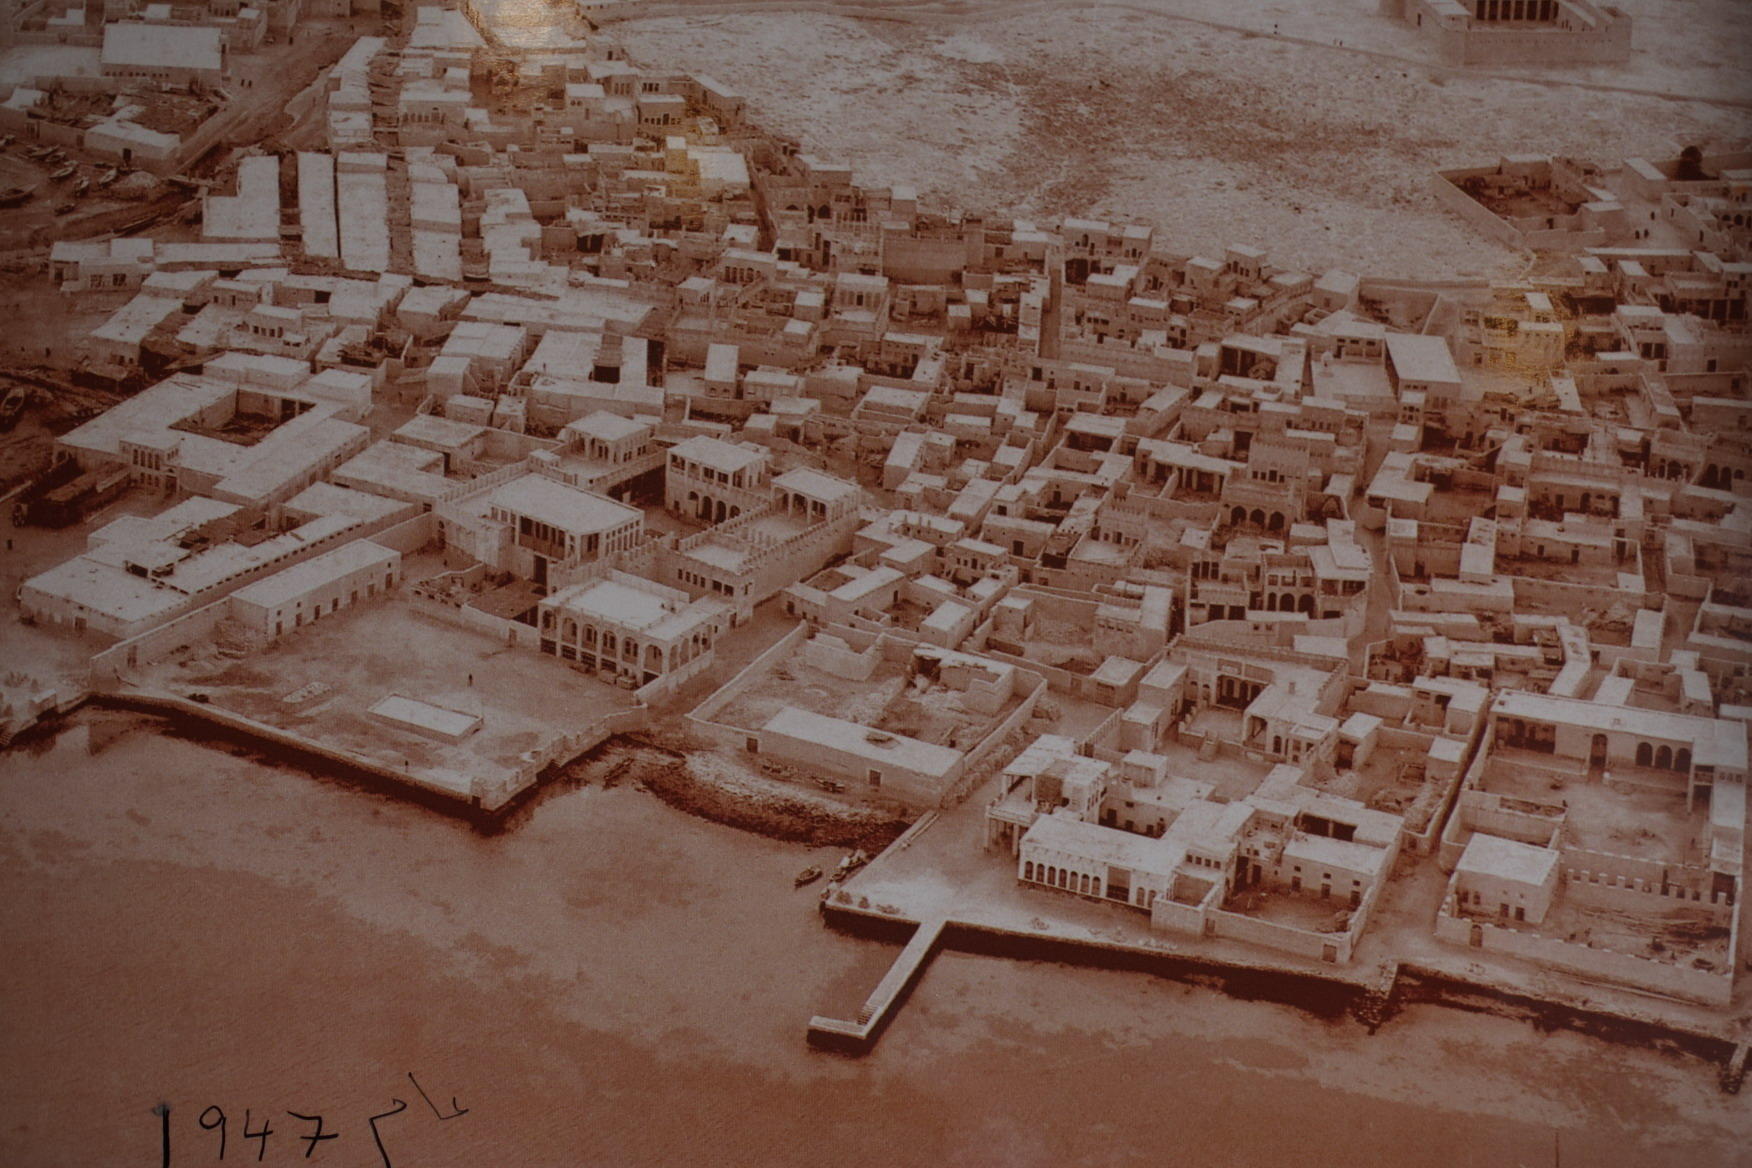 Doha in 1947